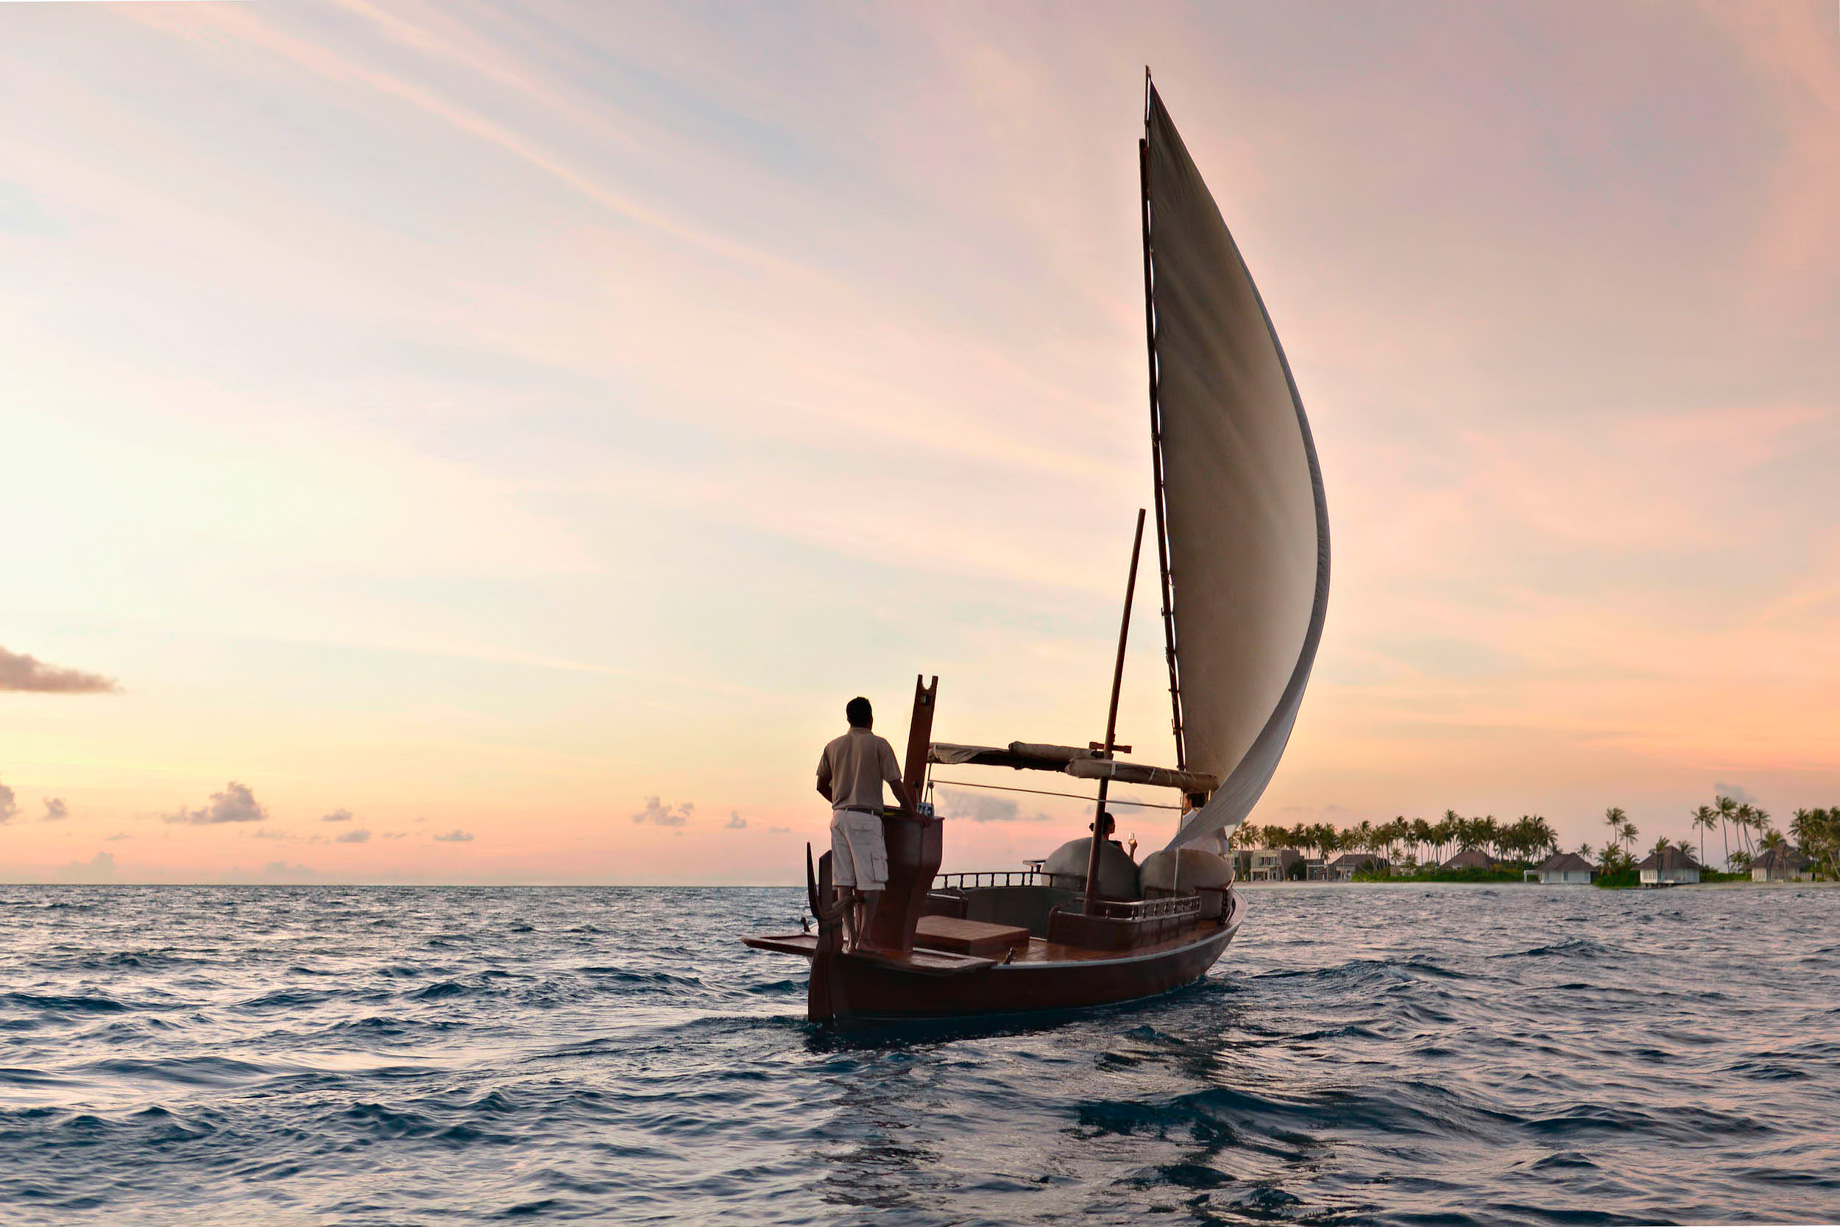 Cheval Blanc Randheli Resort – Noonu Atoll, Maldives – Indian Ocean Sunset Sailing